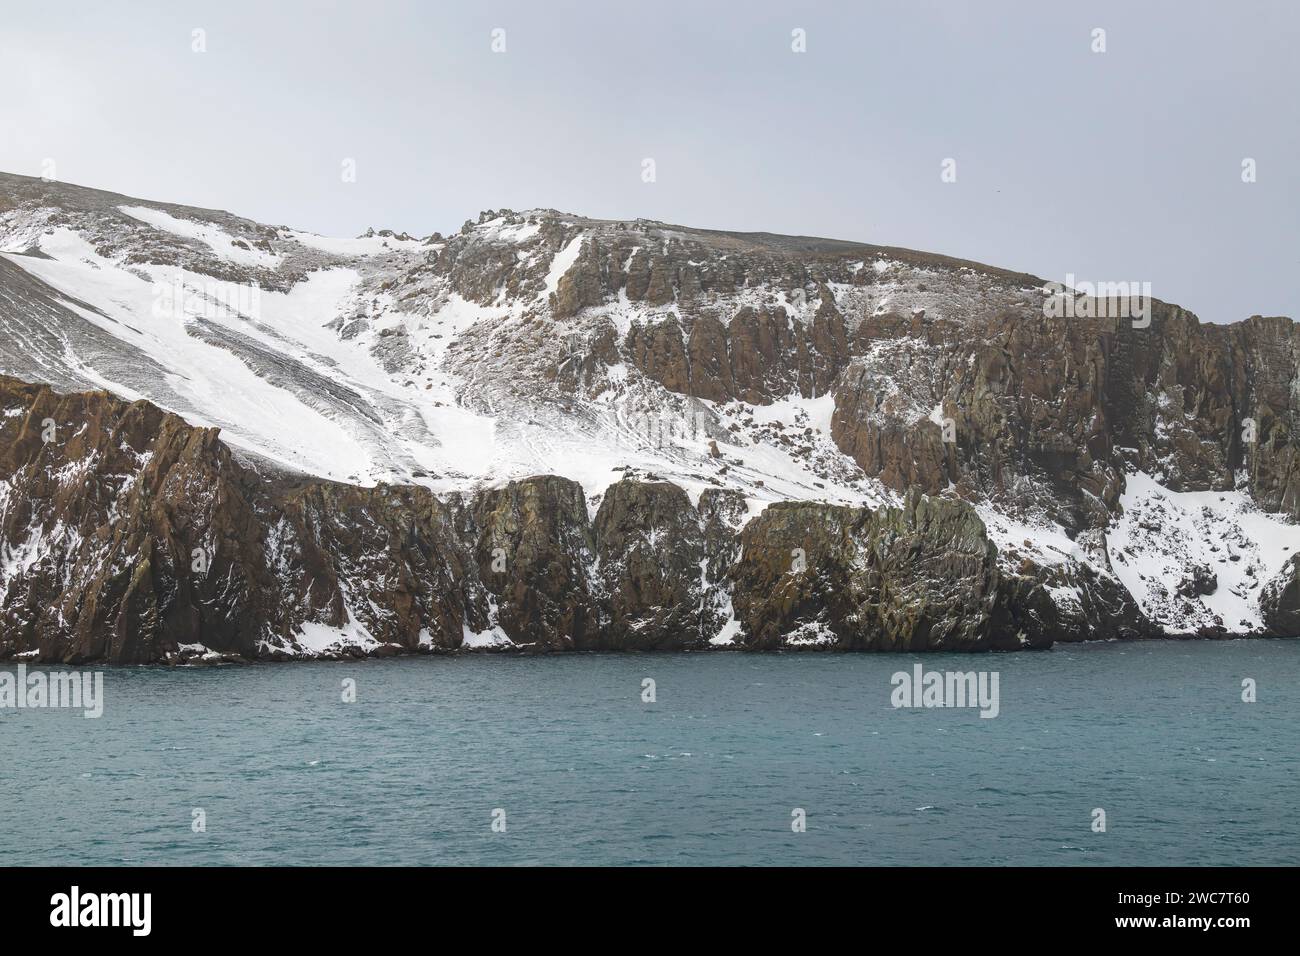 Isla de engaño Islas Shetland del sur puerto natural seguro en la caldera de un volcán activo ruinas de una estación ballenera, Zodiacs de la expedición m Foto de stock